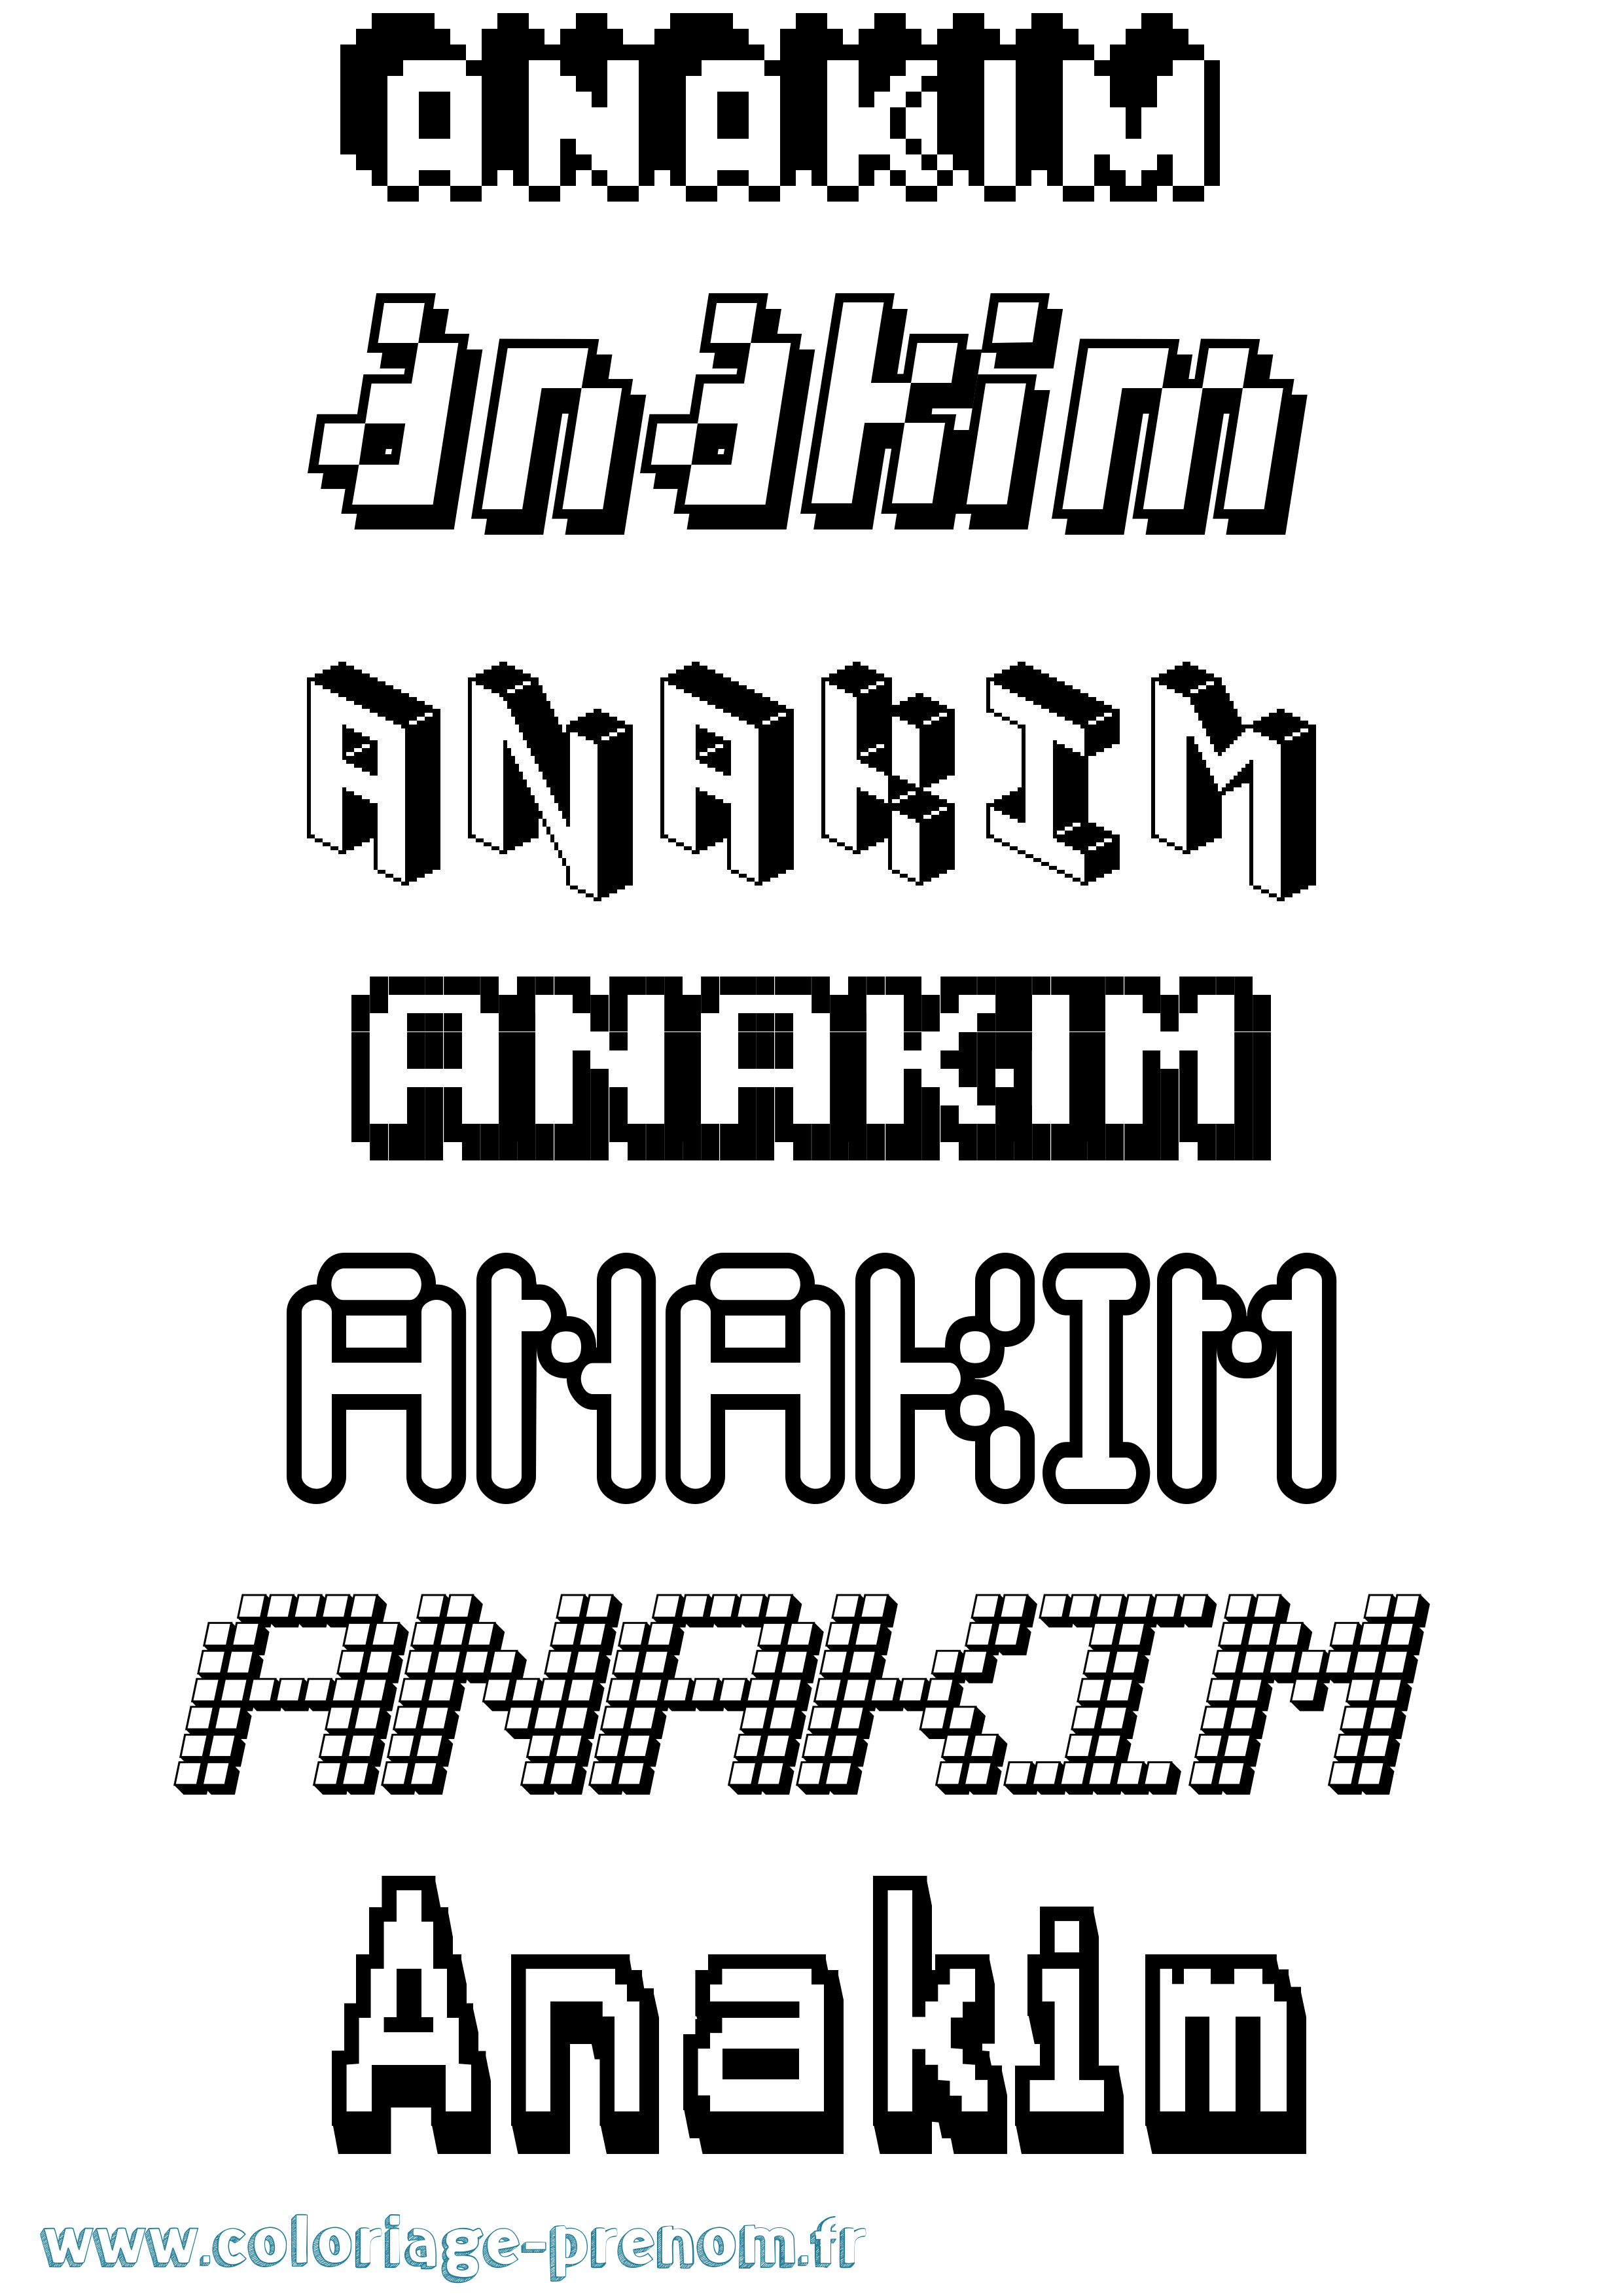 Coloriage prénom Anakim Pixel